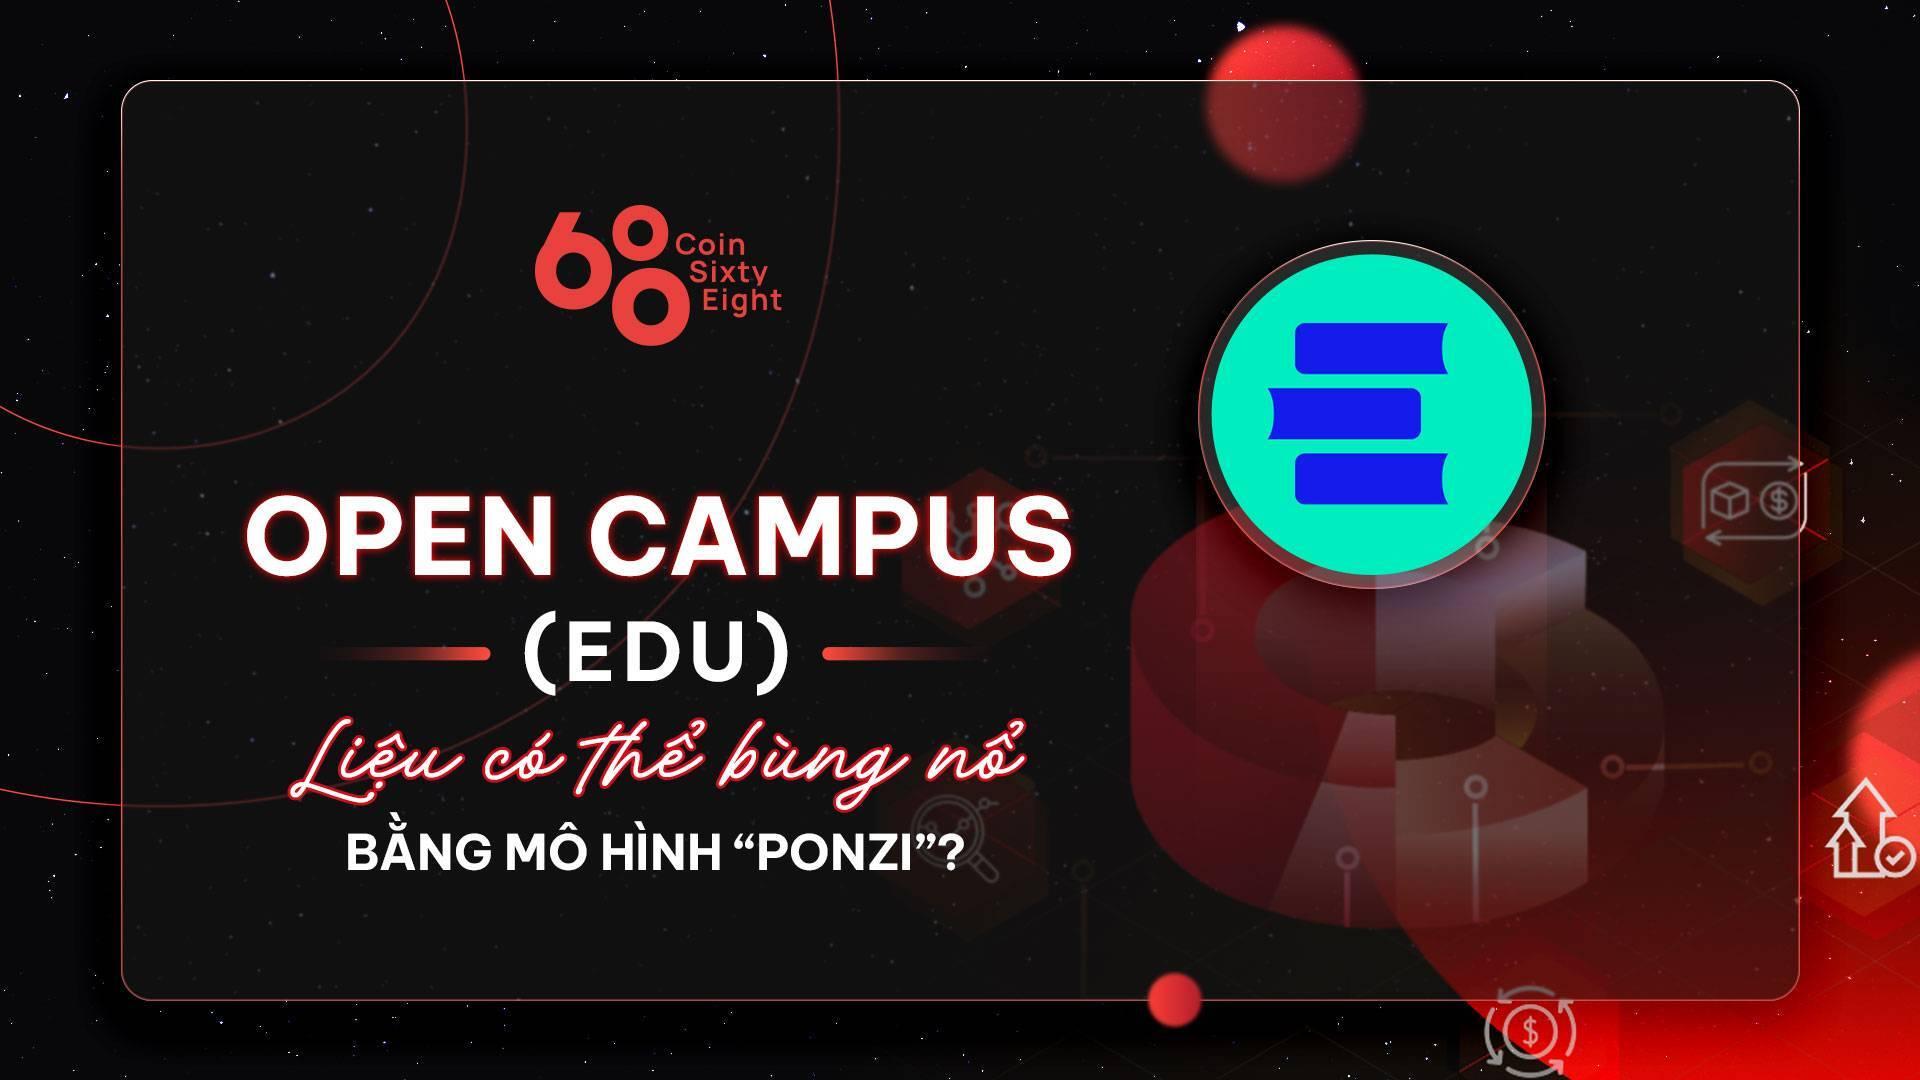 tokenomics-research-10-open-campus-edu-lieu-co-the-bung-no-bang-mo-hinh-ponzi